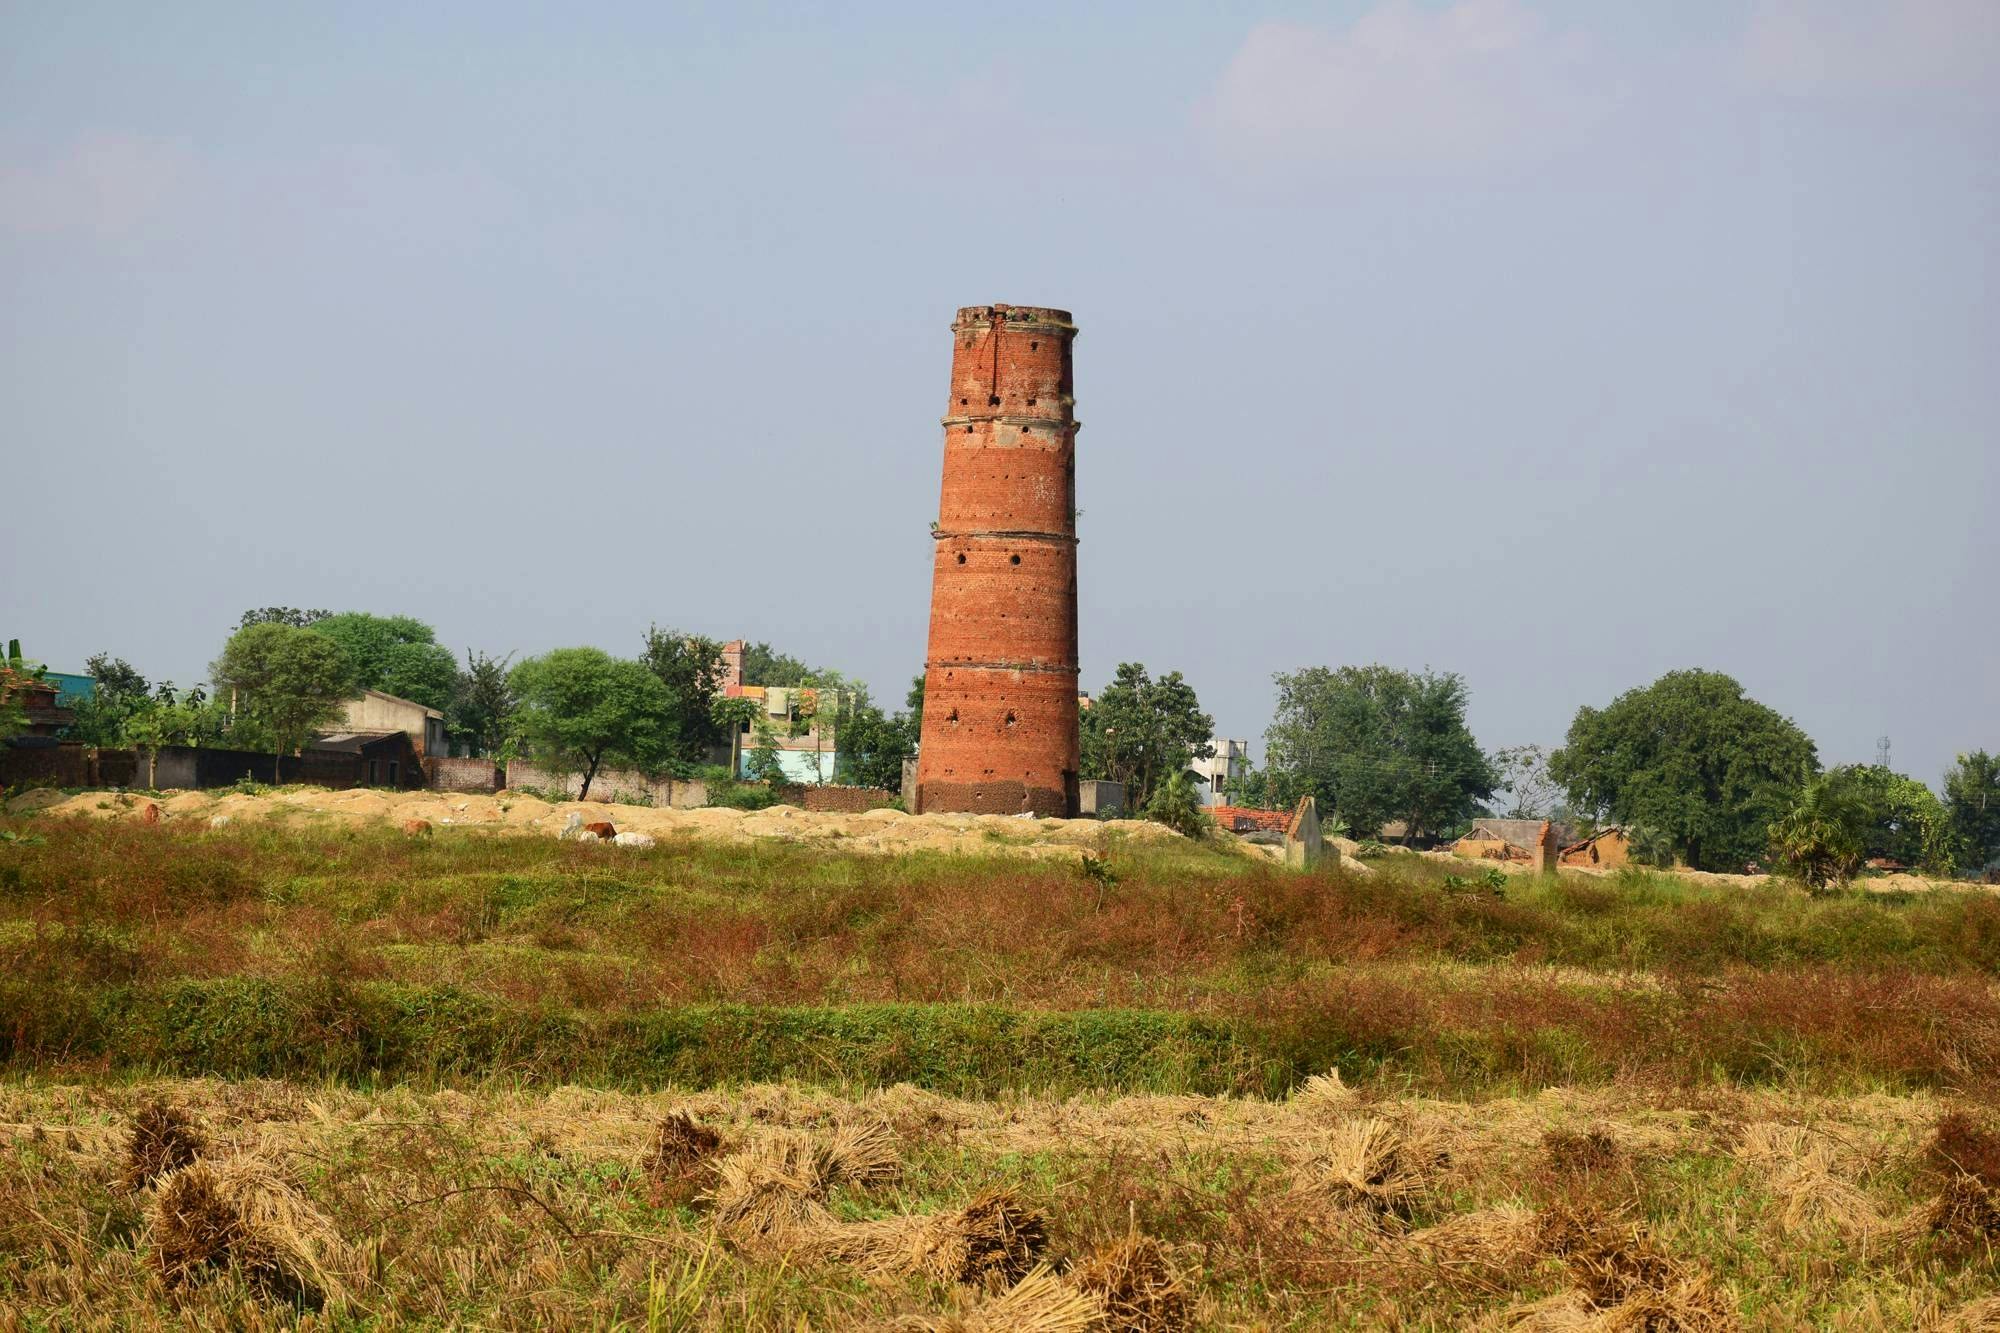 Semaphore Tower at Arrarah